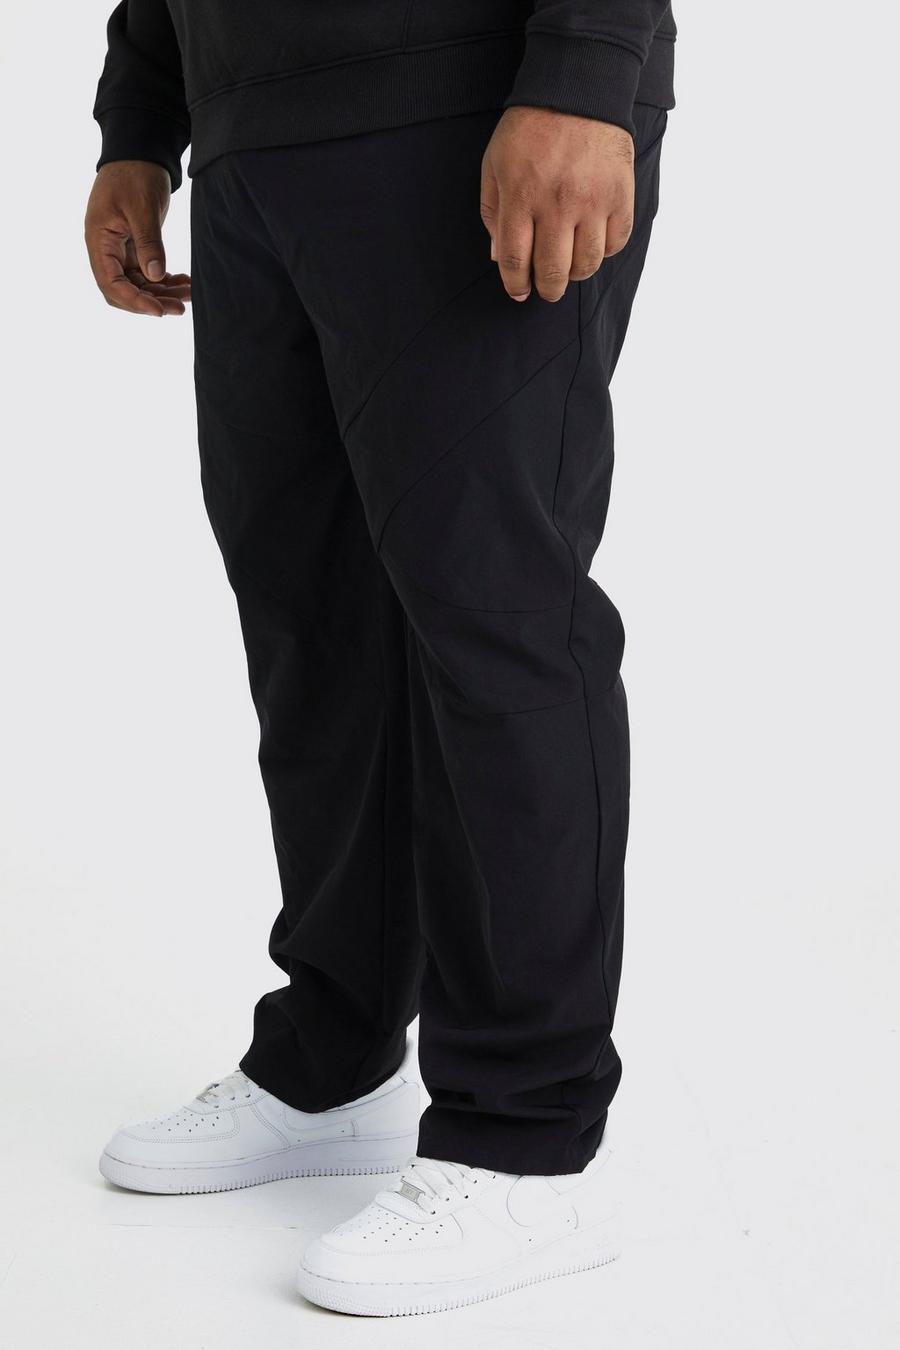 Pantaloni dritti Plus Size in Stretch tecnico elasticizzato con pannelli, Black nero